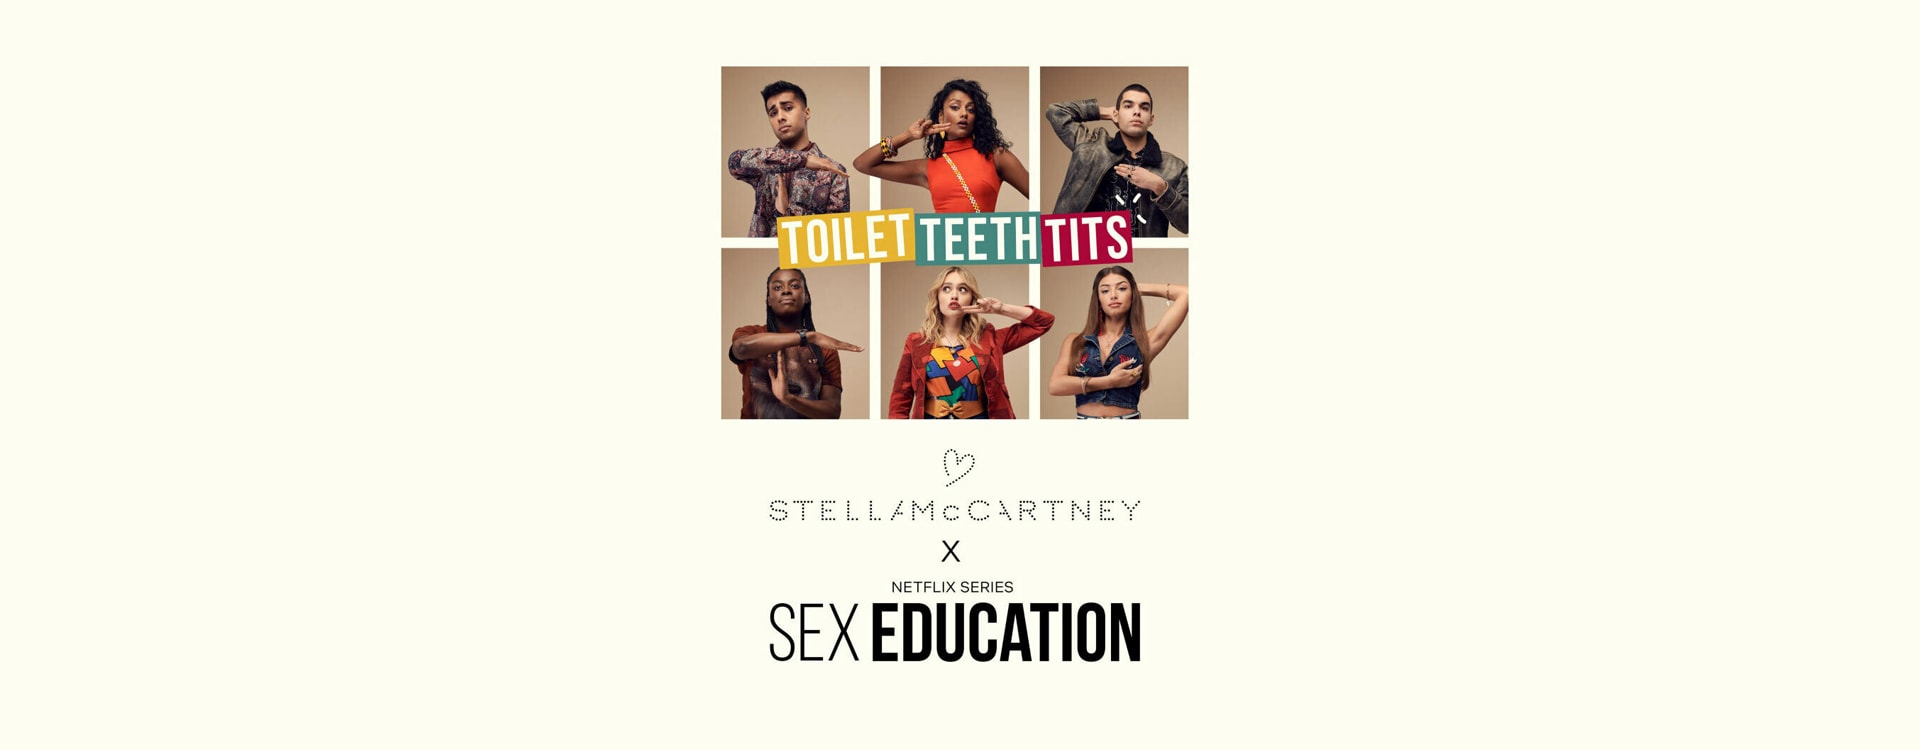 When Stella McCartney met Netflixs Sex Education Deloitte UK